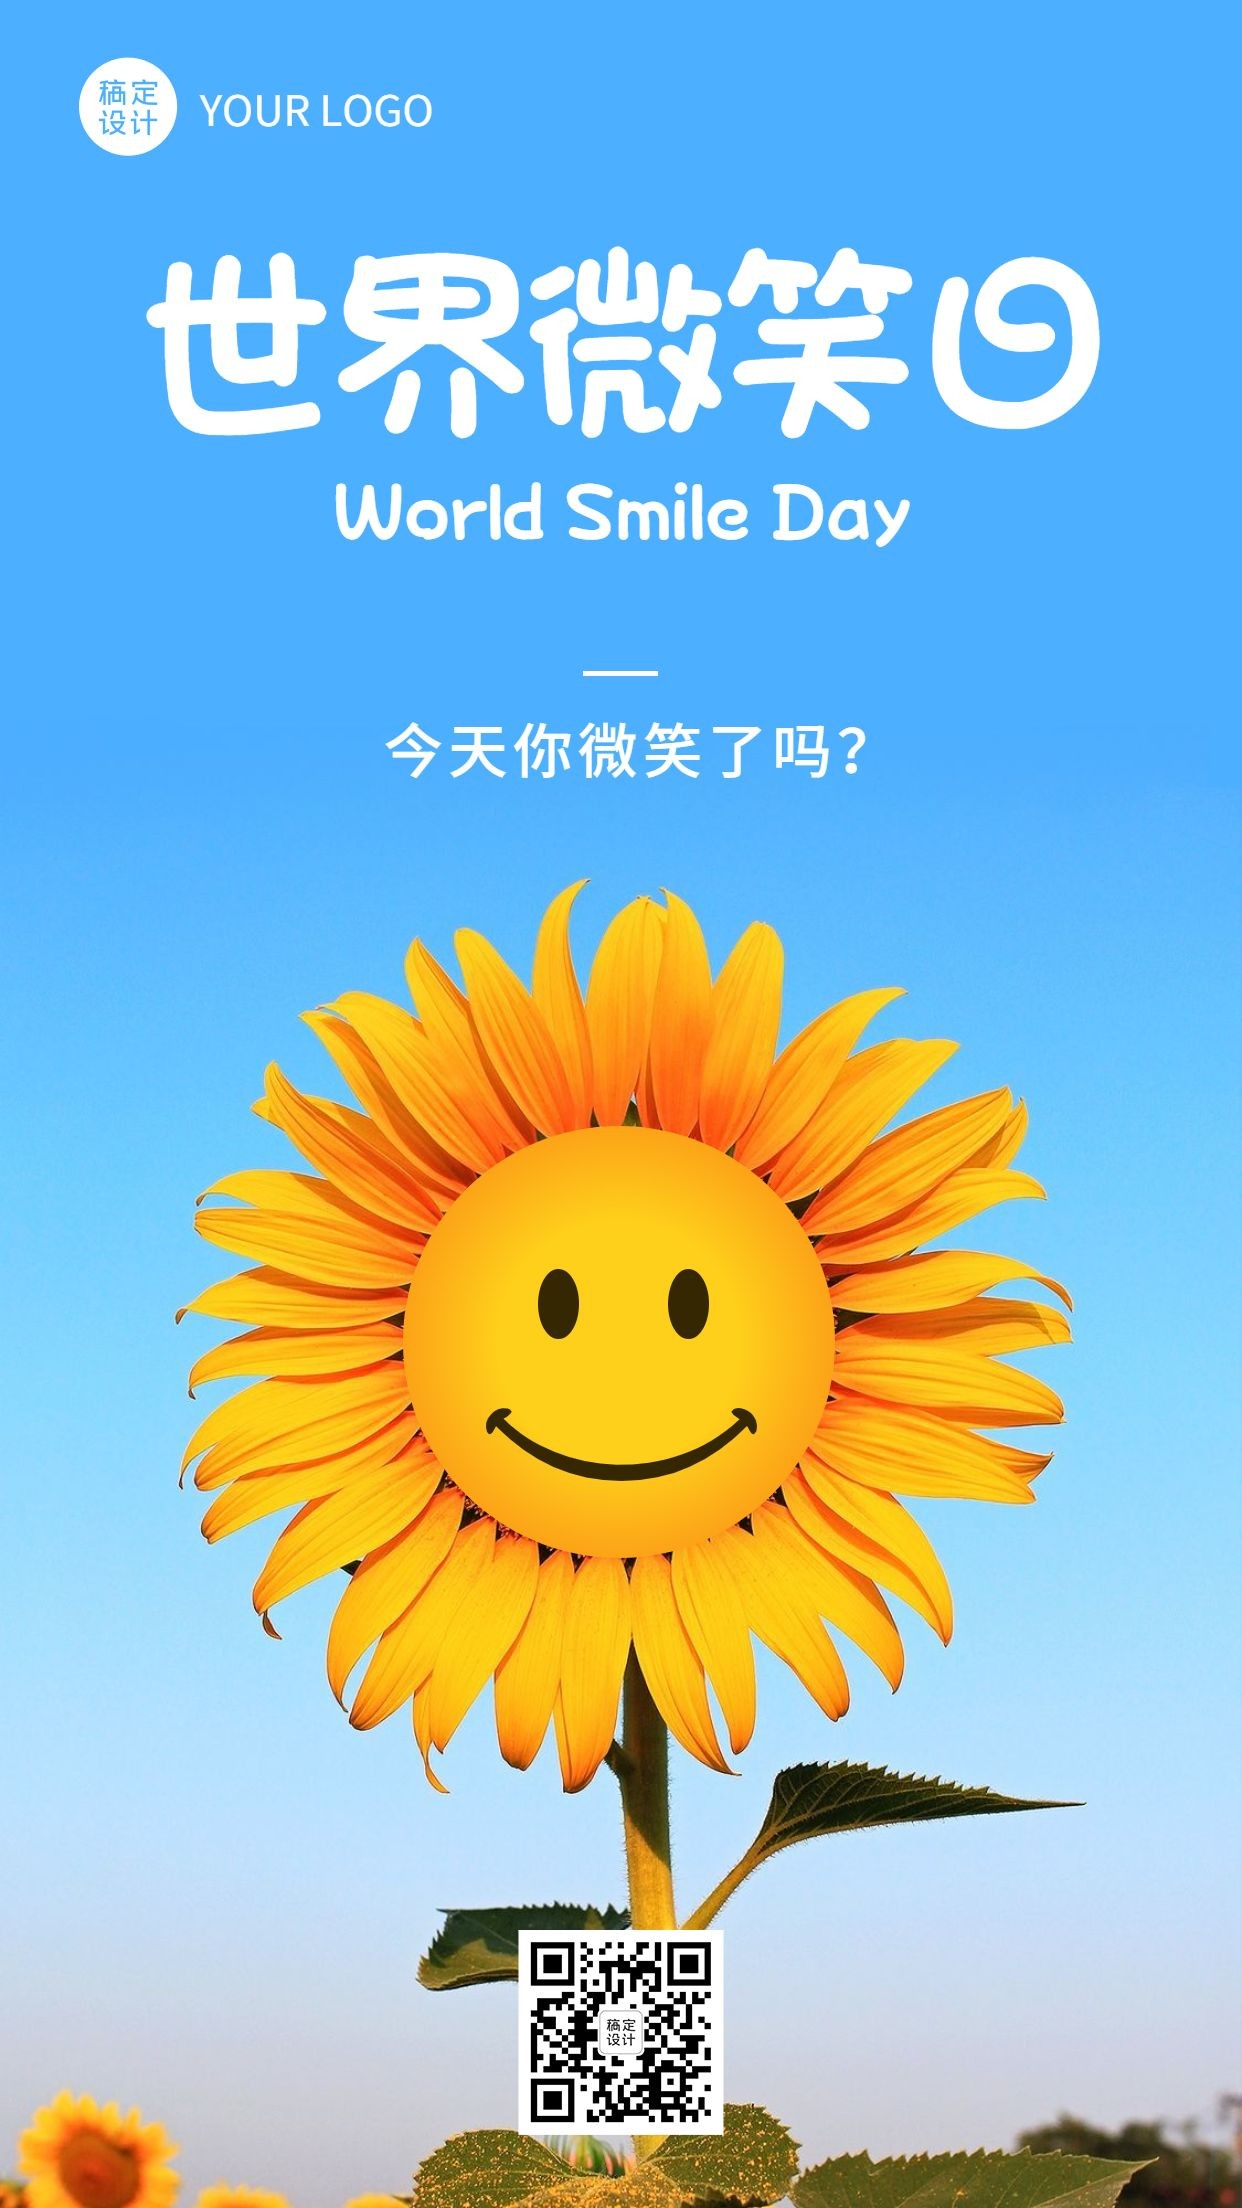 世界微笑日创意笑脸向日葵手机海报